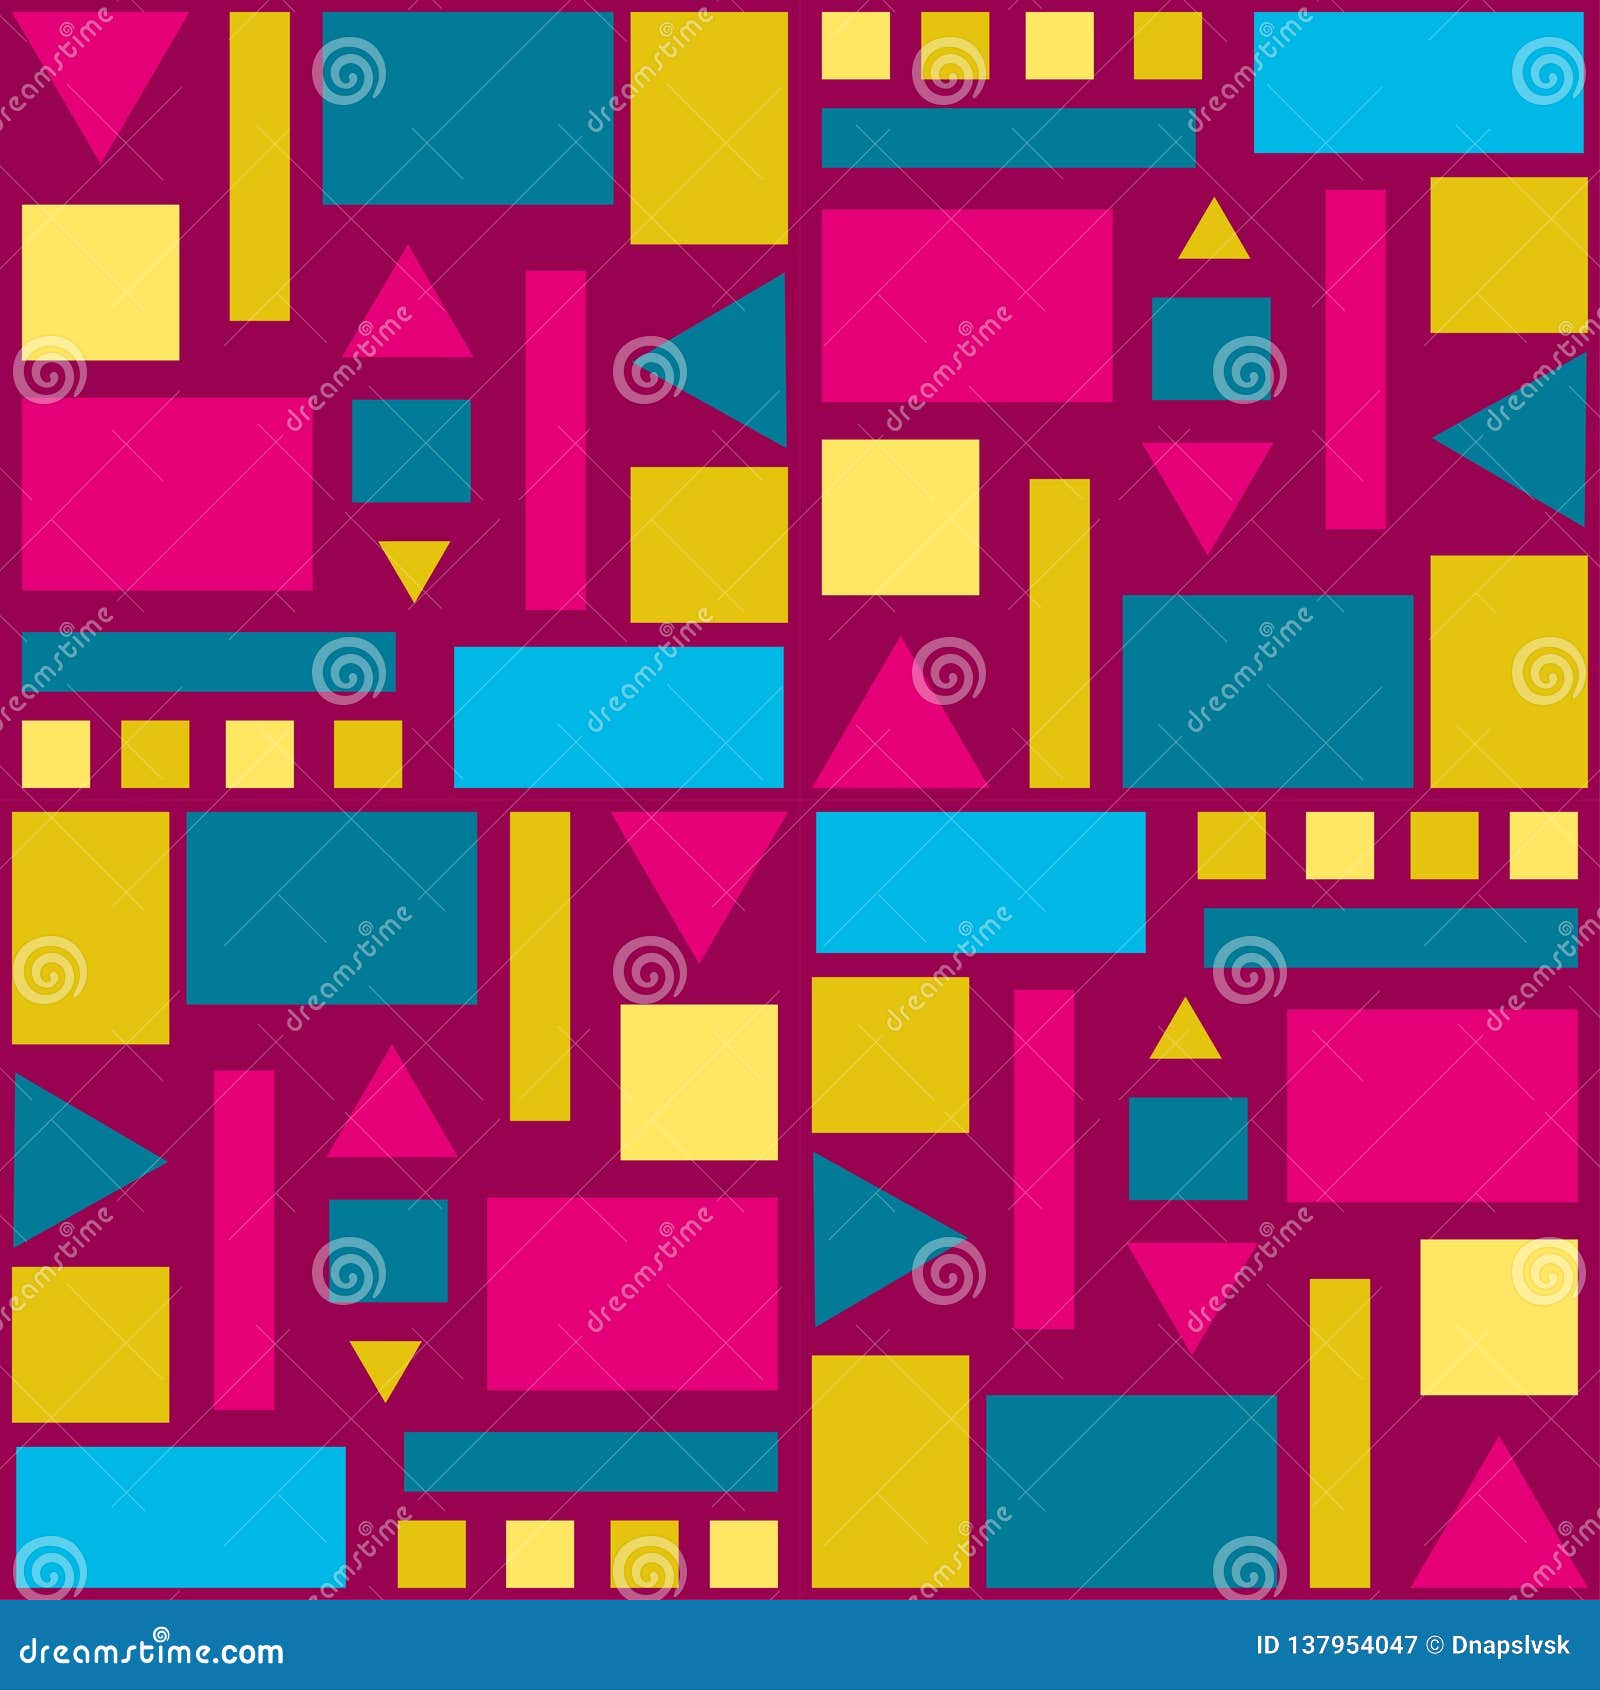 Figuras Geometricas De Diversos Colores Y Tamanos En Un Color